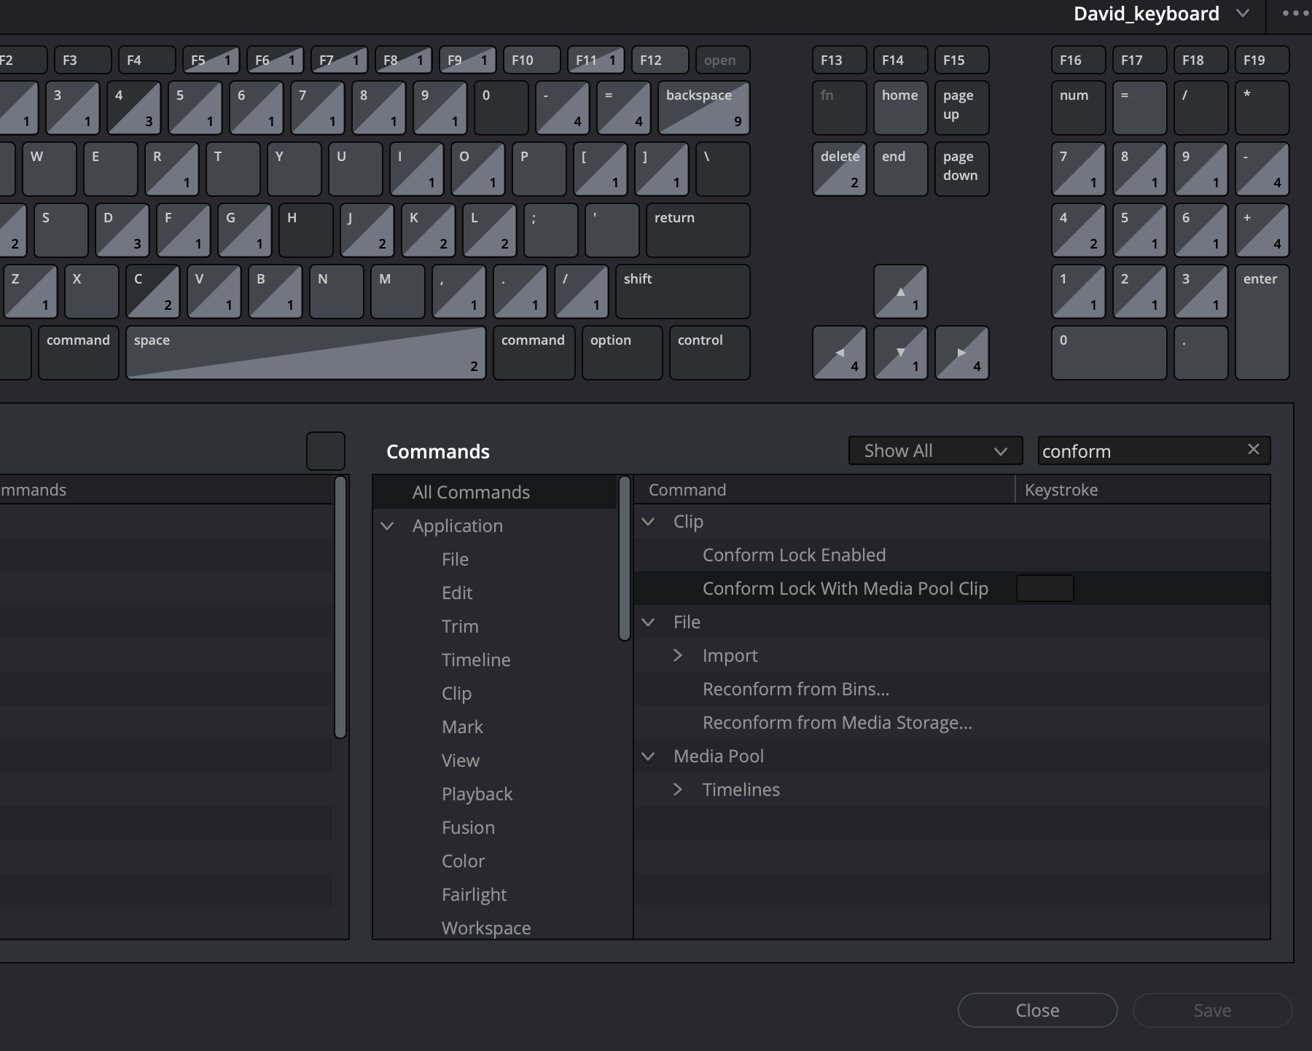 Графическое представление раскладки клавиатуры с помеченными клавишами и интерфейсом меню для настройки команд.